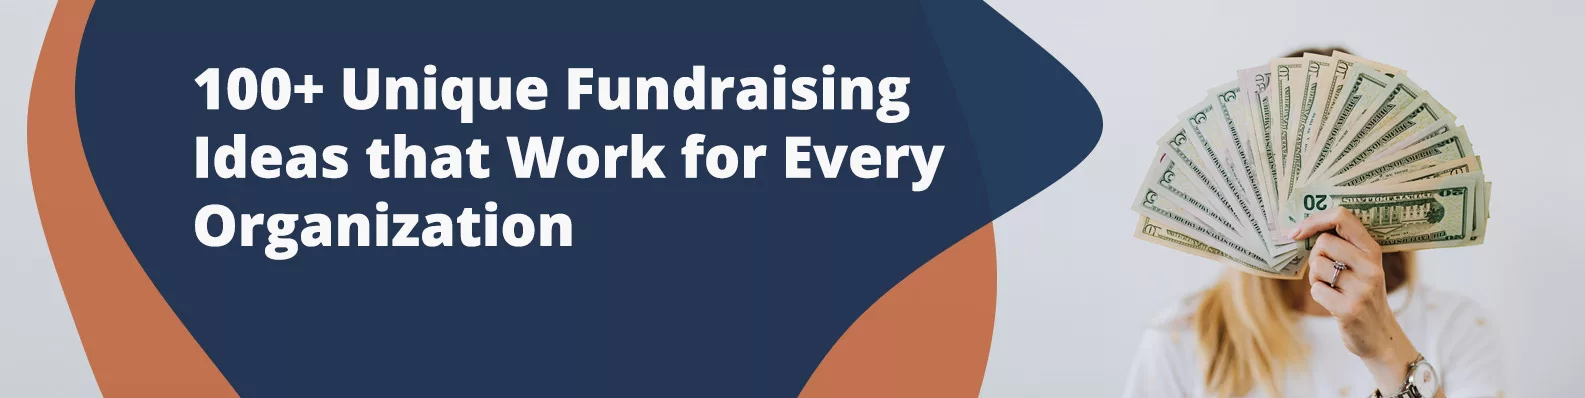 100+ Unique Fundraising Ideas that Work